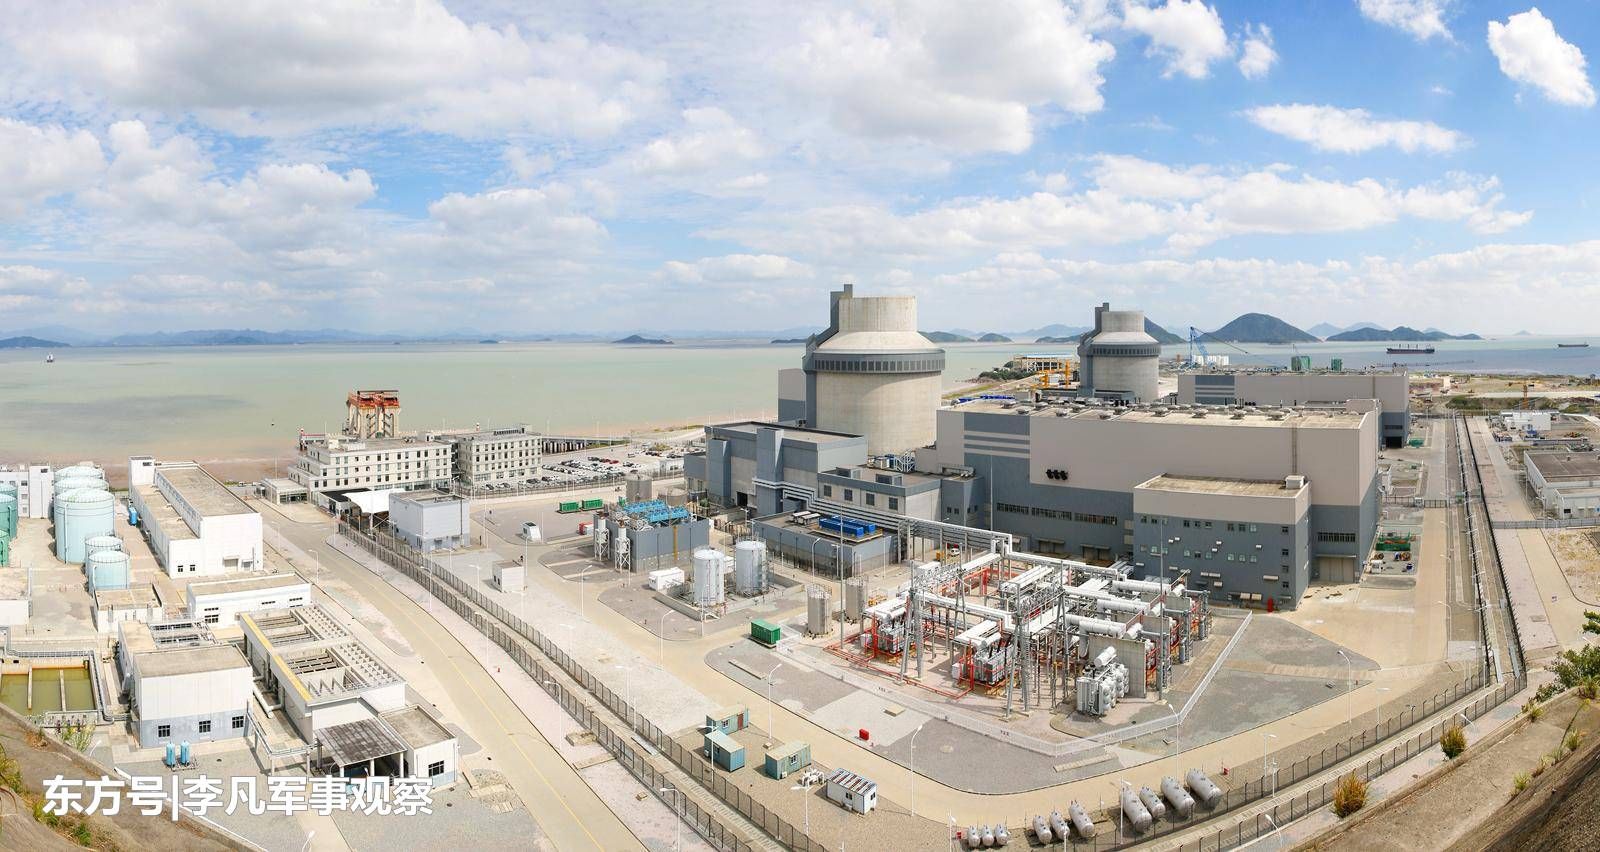 目前各国使用的核电站均属于第二代核电站,而第三代核电机组却迟迟